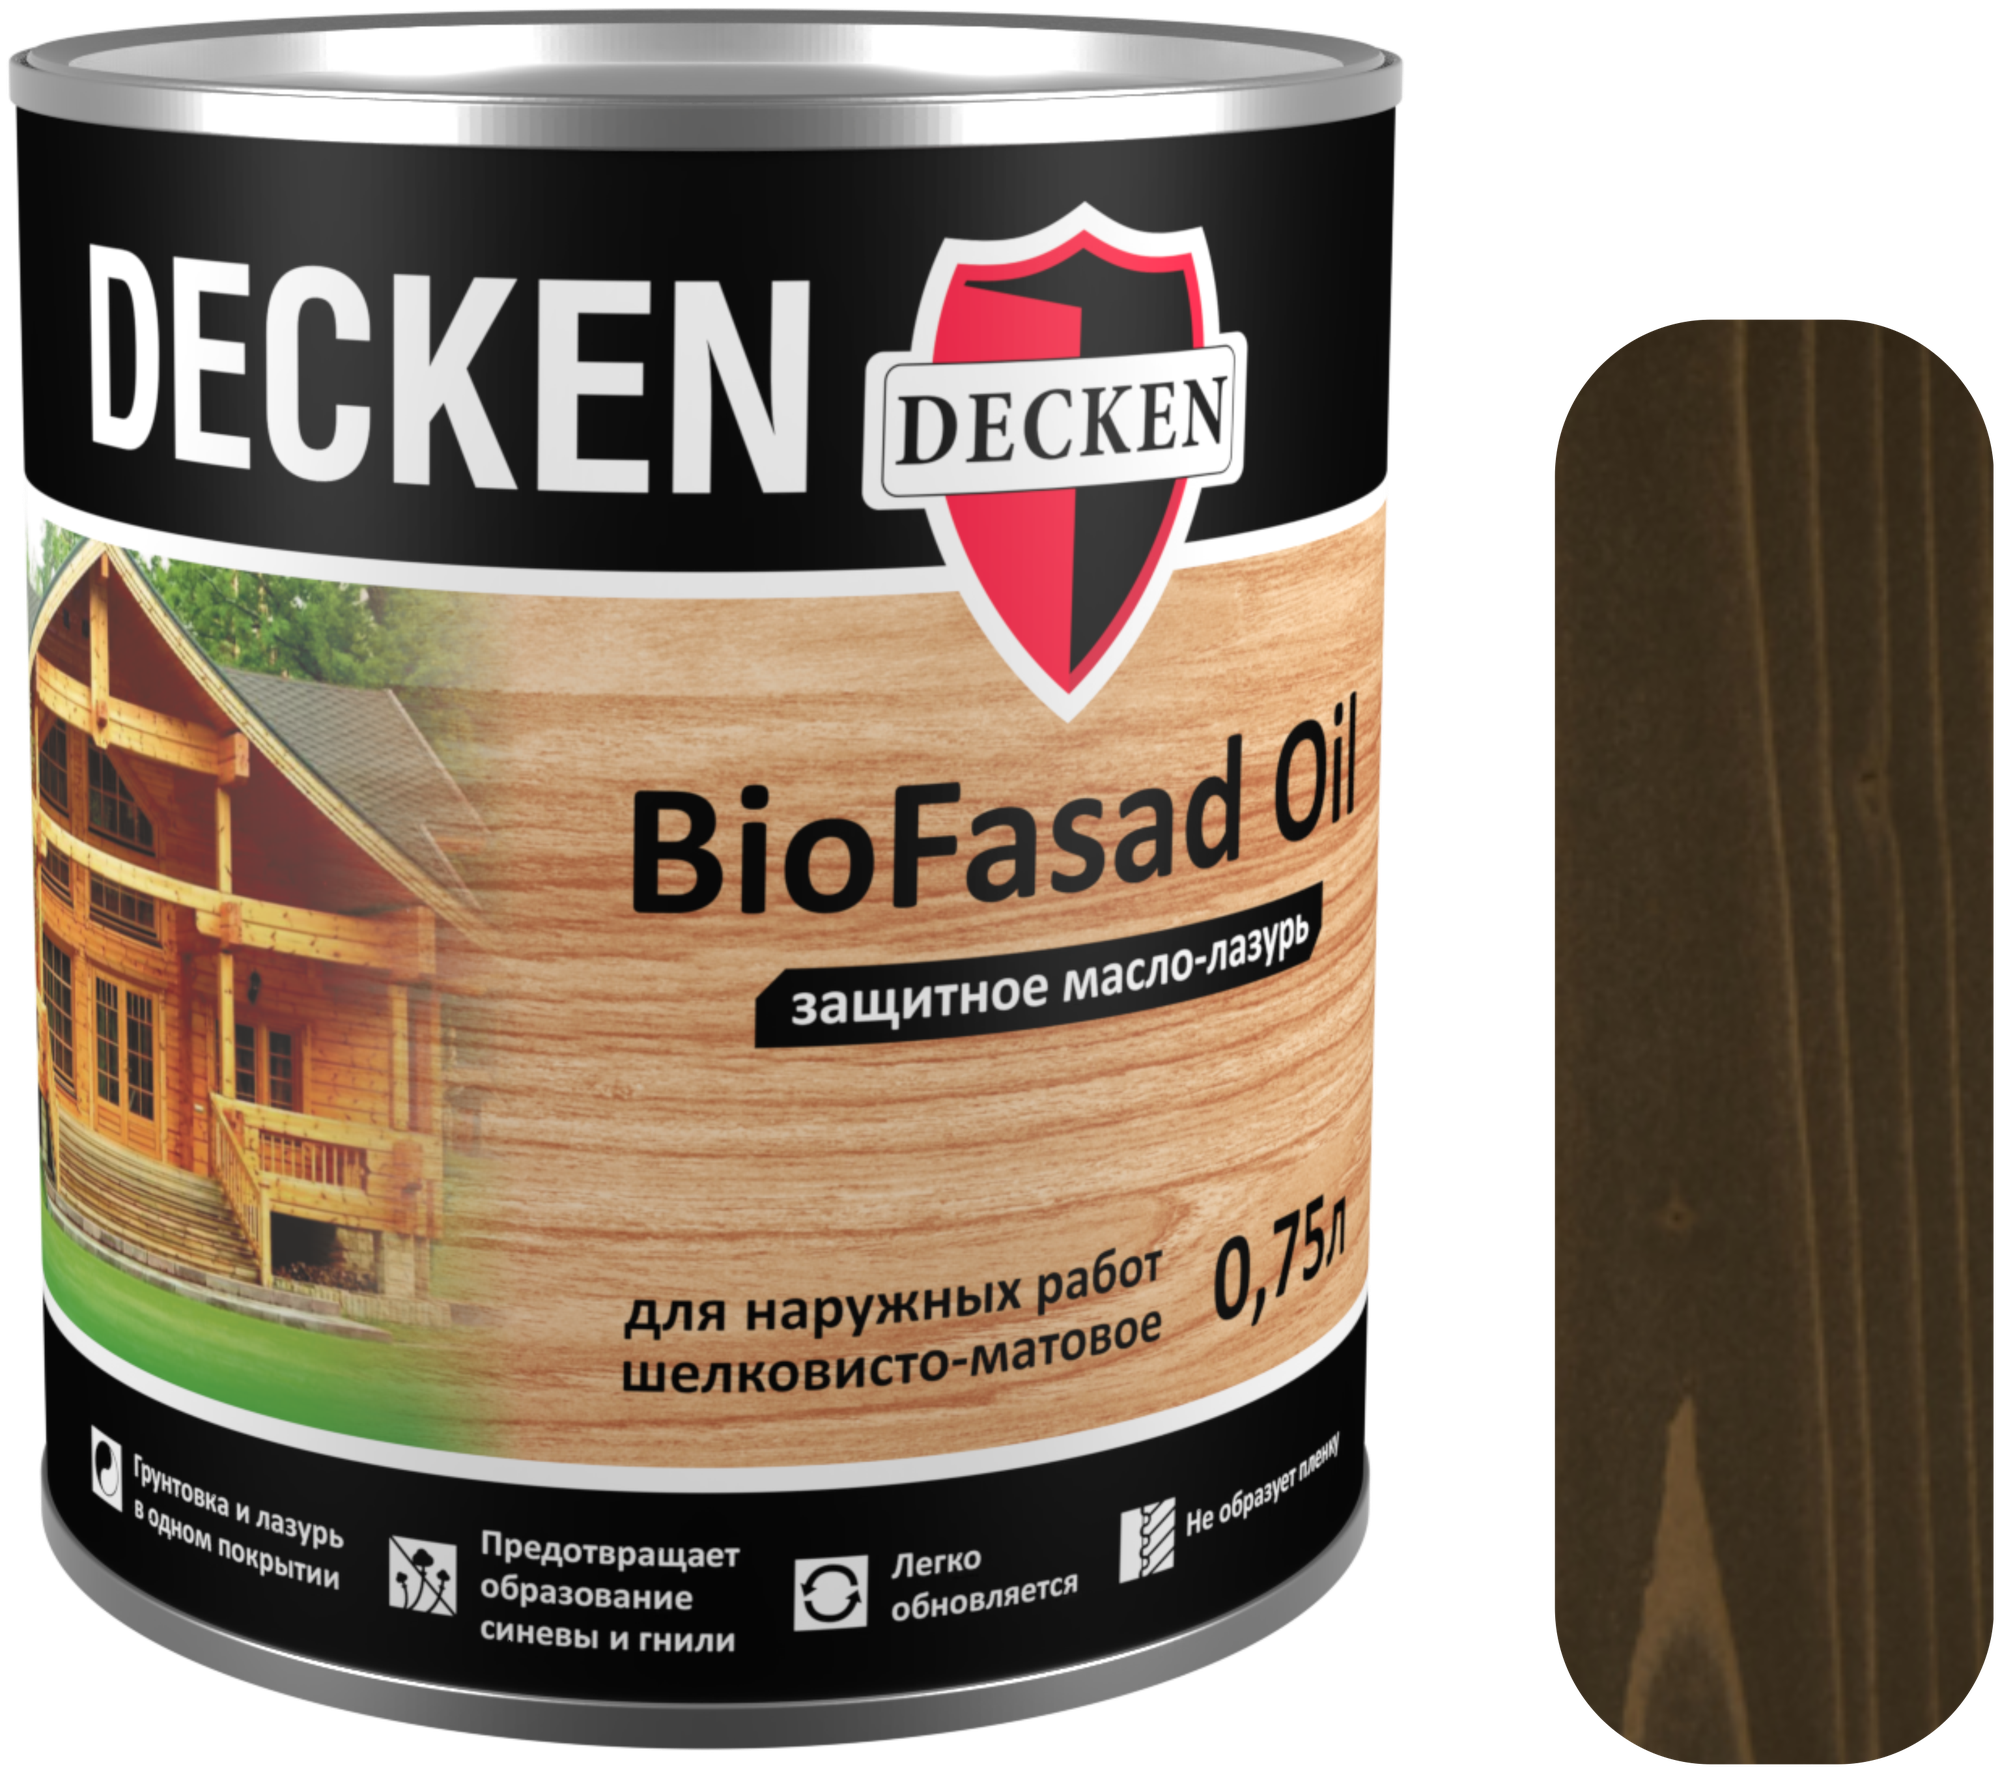 Защитное масло-лазурь Decken BioFasad Oil капучино 0.75